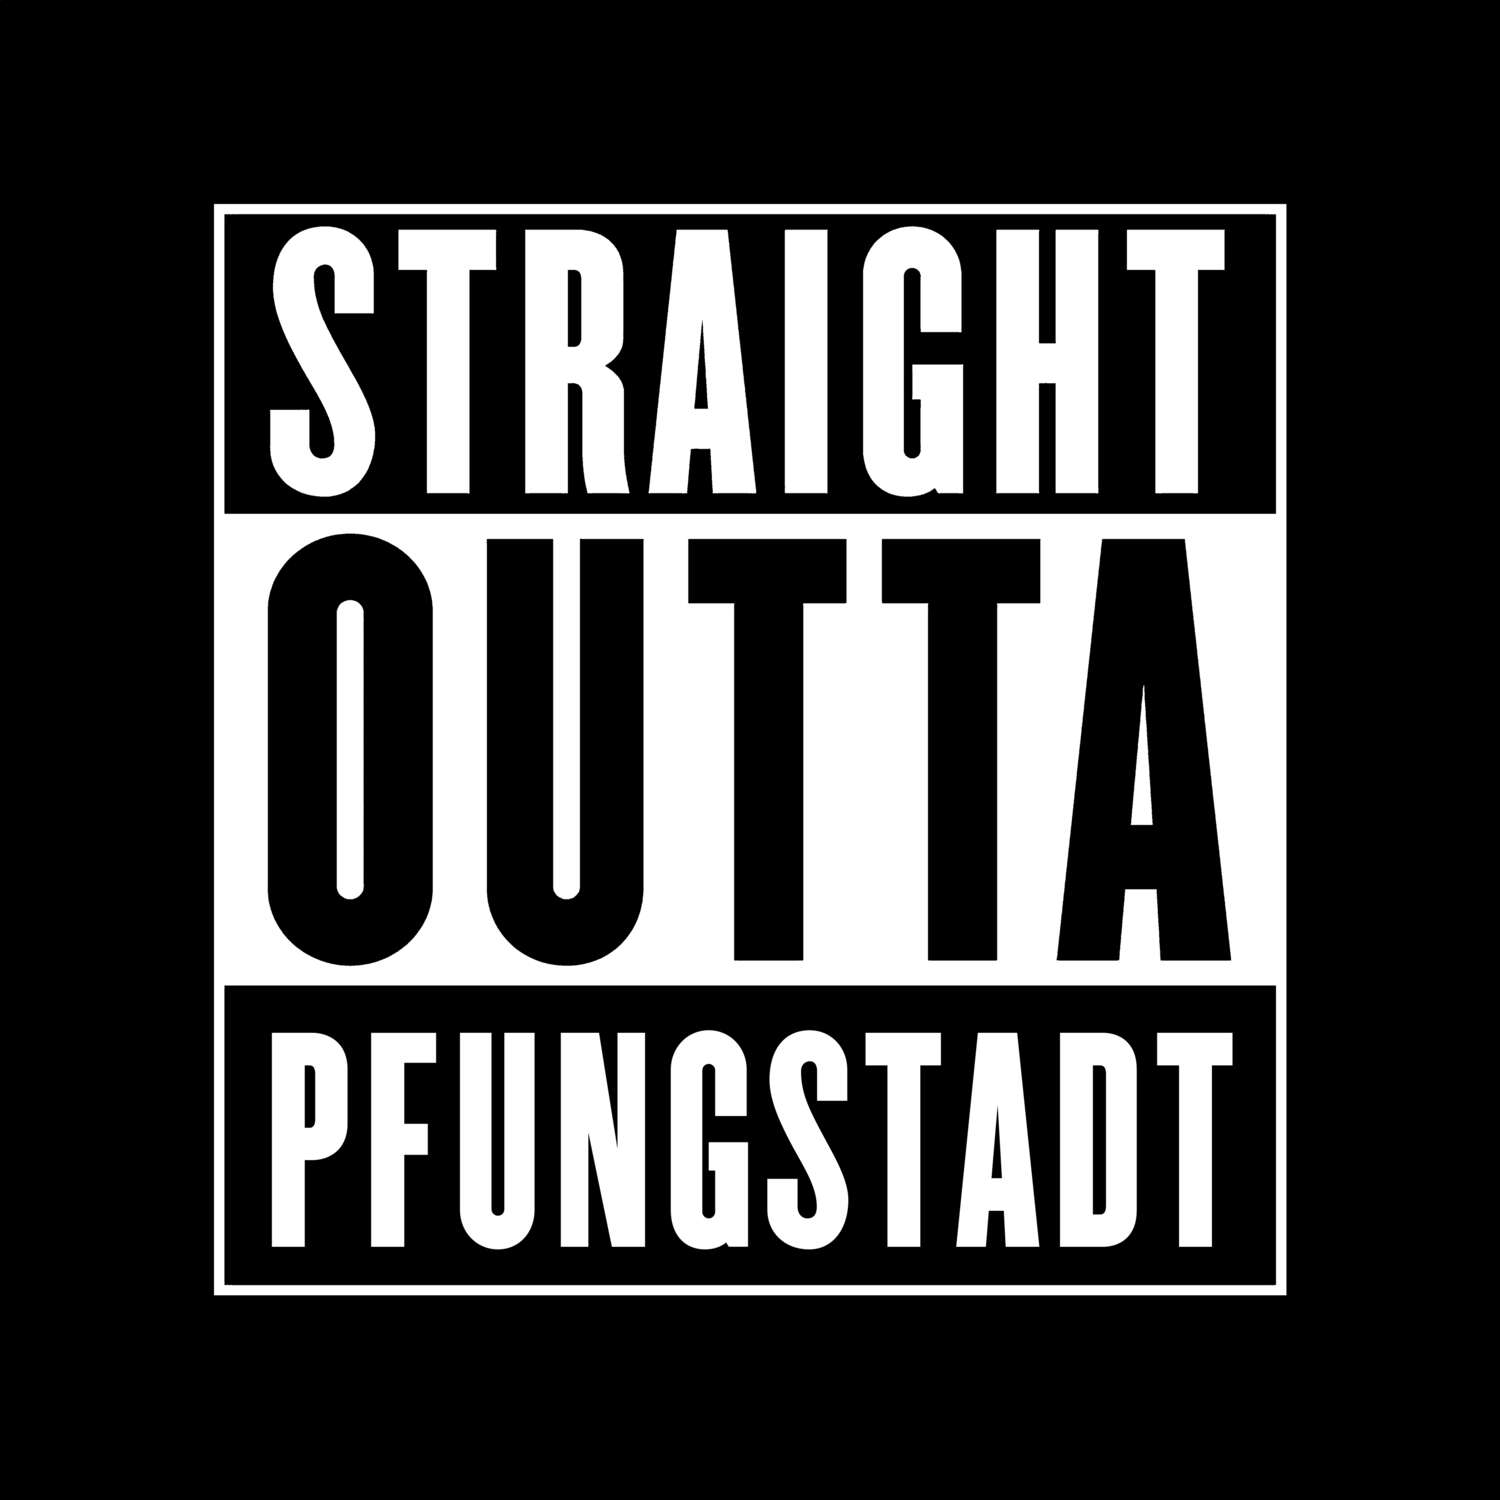 Pfungstadt T-Shirt »Straight Outta«